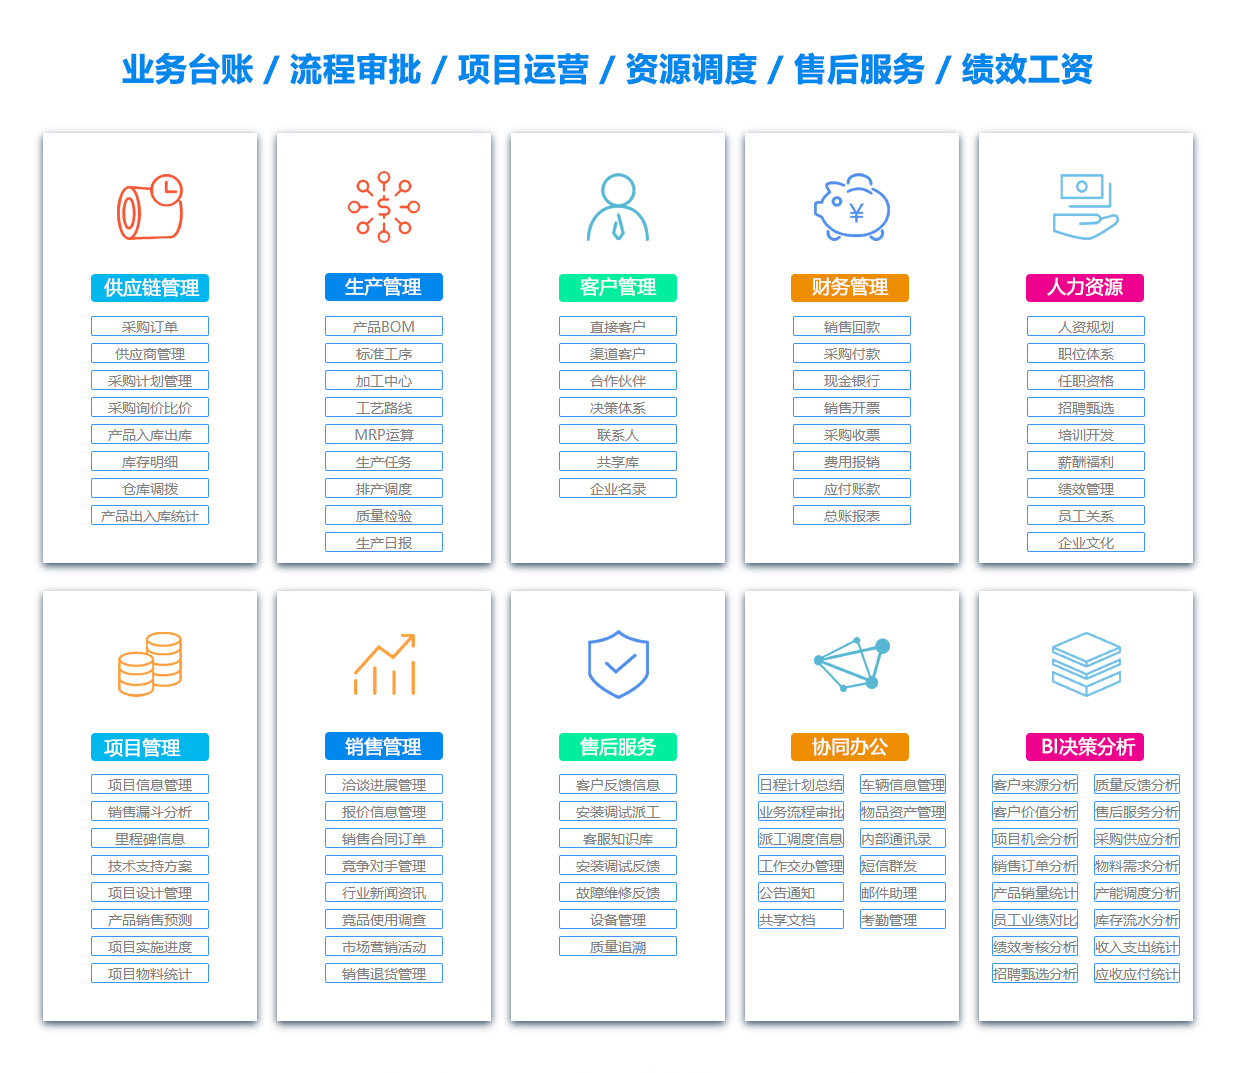 重庆BOM:物料清单软件